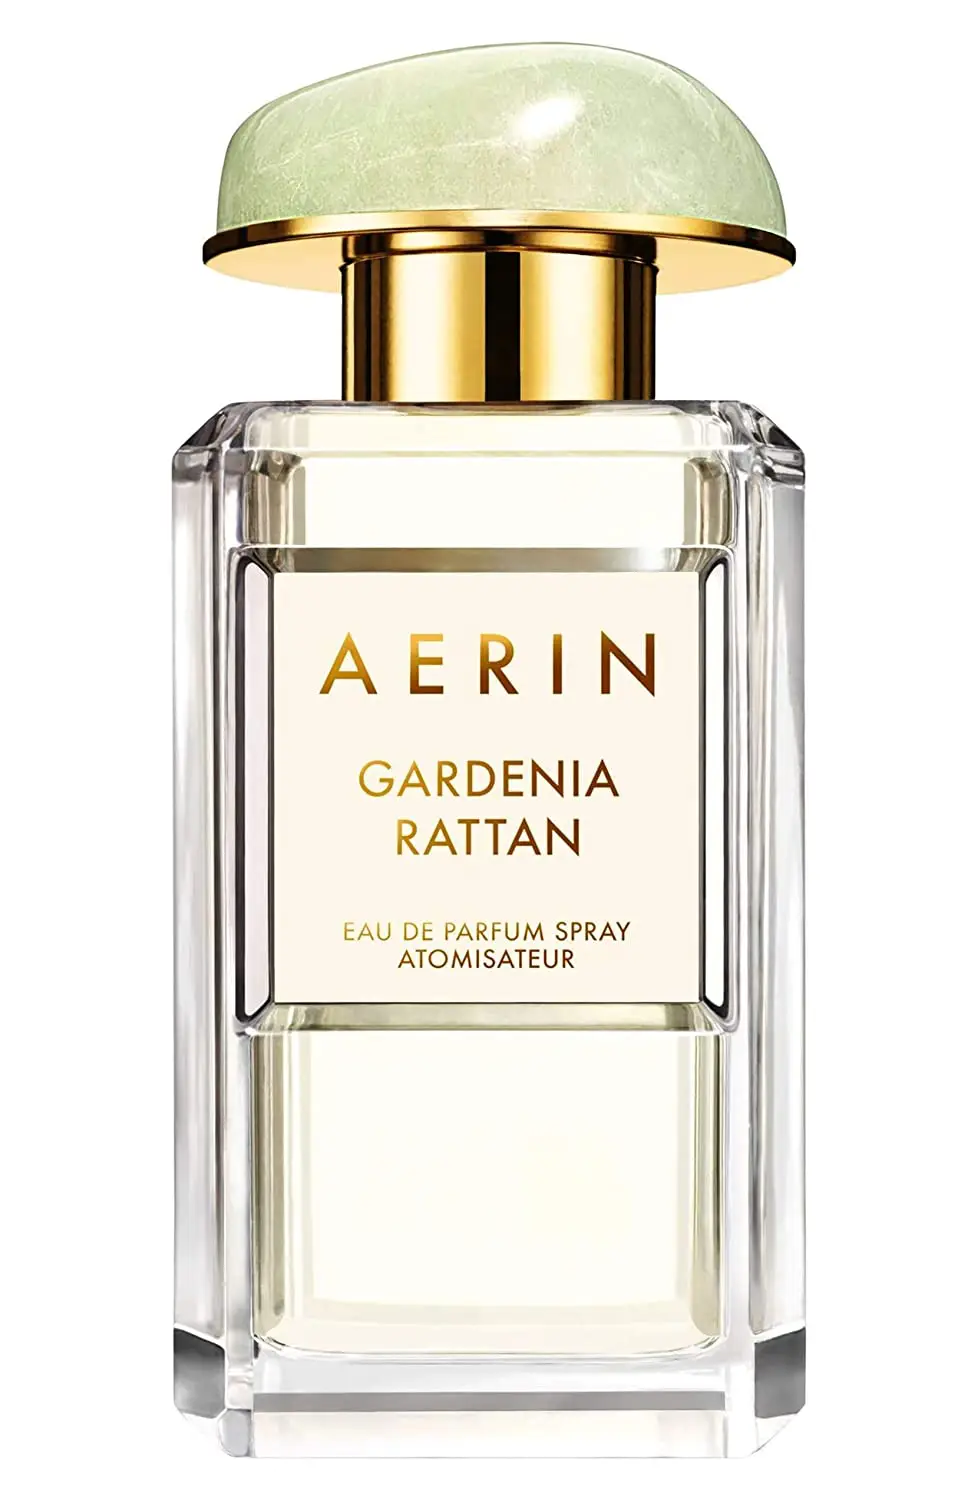 Aerin Gardenia Rattan Eau de Parfum